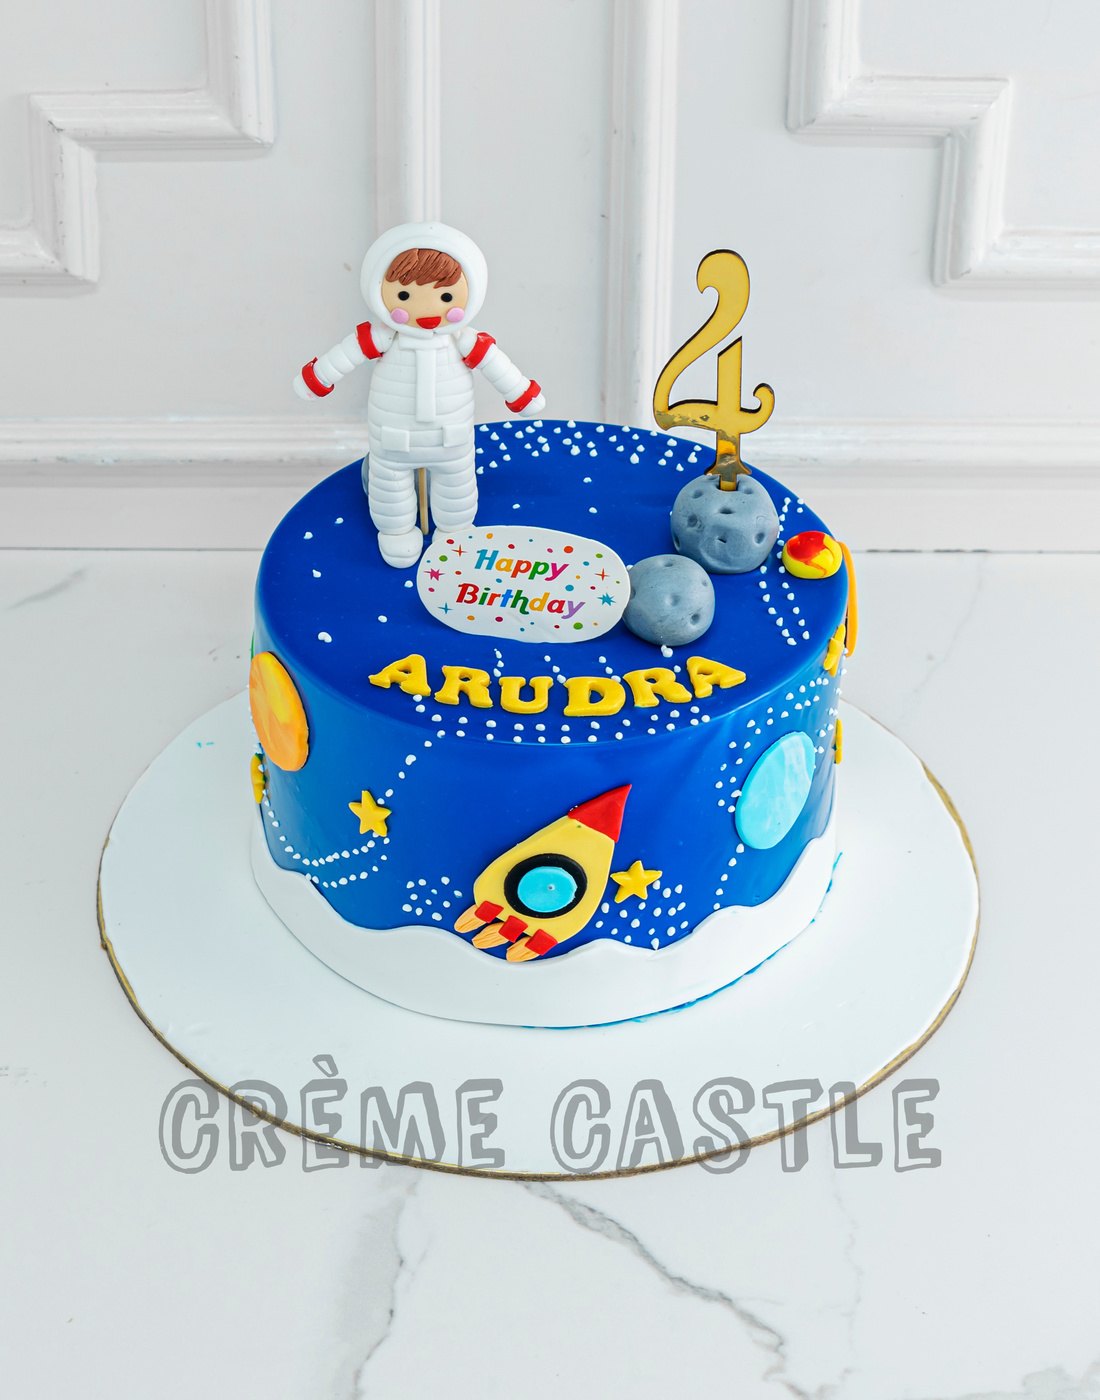 Astronaut Space Design Cake - Creme Castle